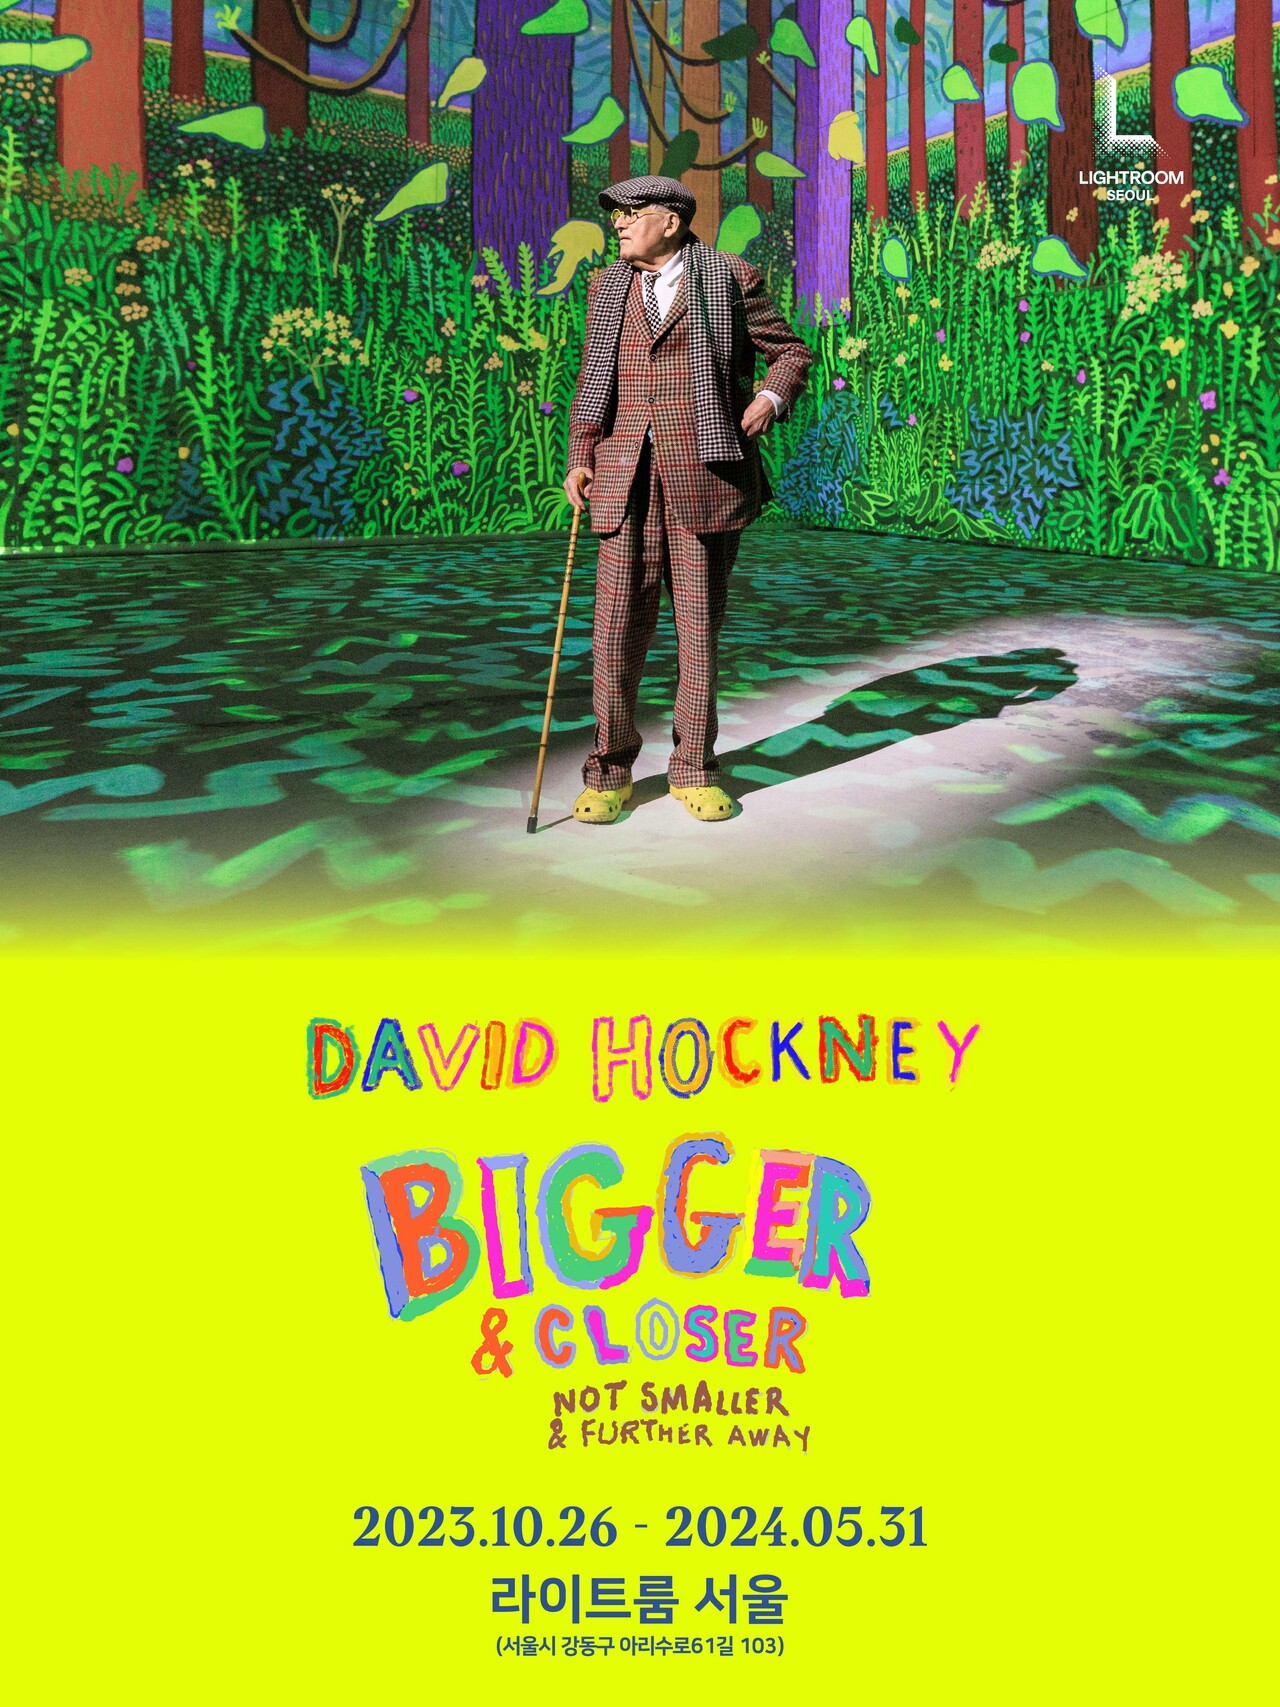 신한카드는 '데이비드 호크니 : 비거 & 클로저 (David Hockney : Bigger & Closer (not smaller & further away))' 전시회의 입장권 할인을 단독으로 제공한다고 12일 밝혔다. [신한카드 제공=뉴스퀘스트]